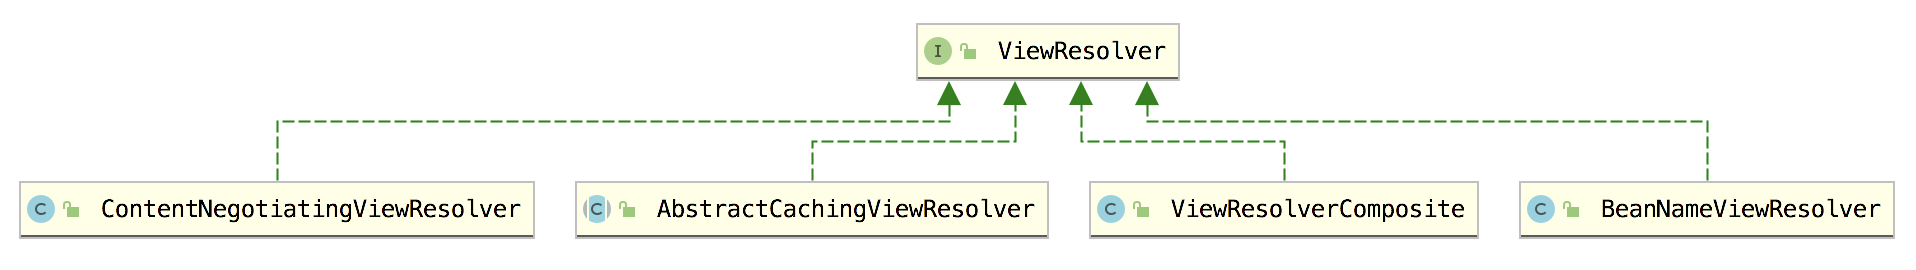 如何理解ViewResolver组件